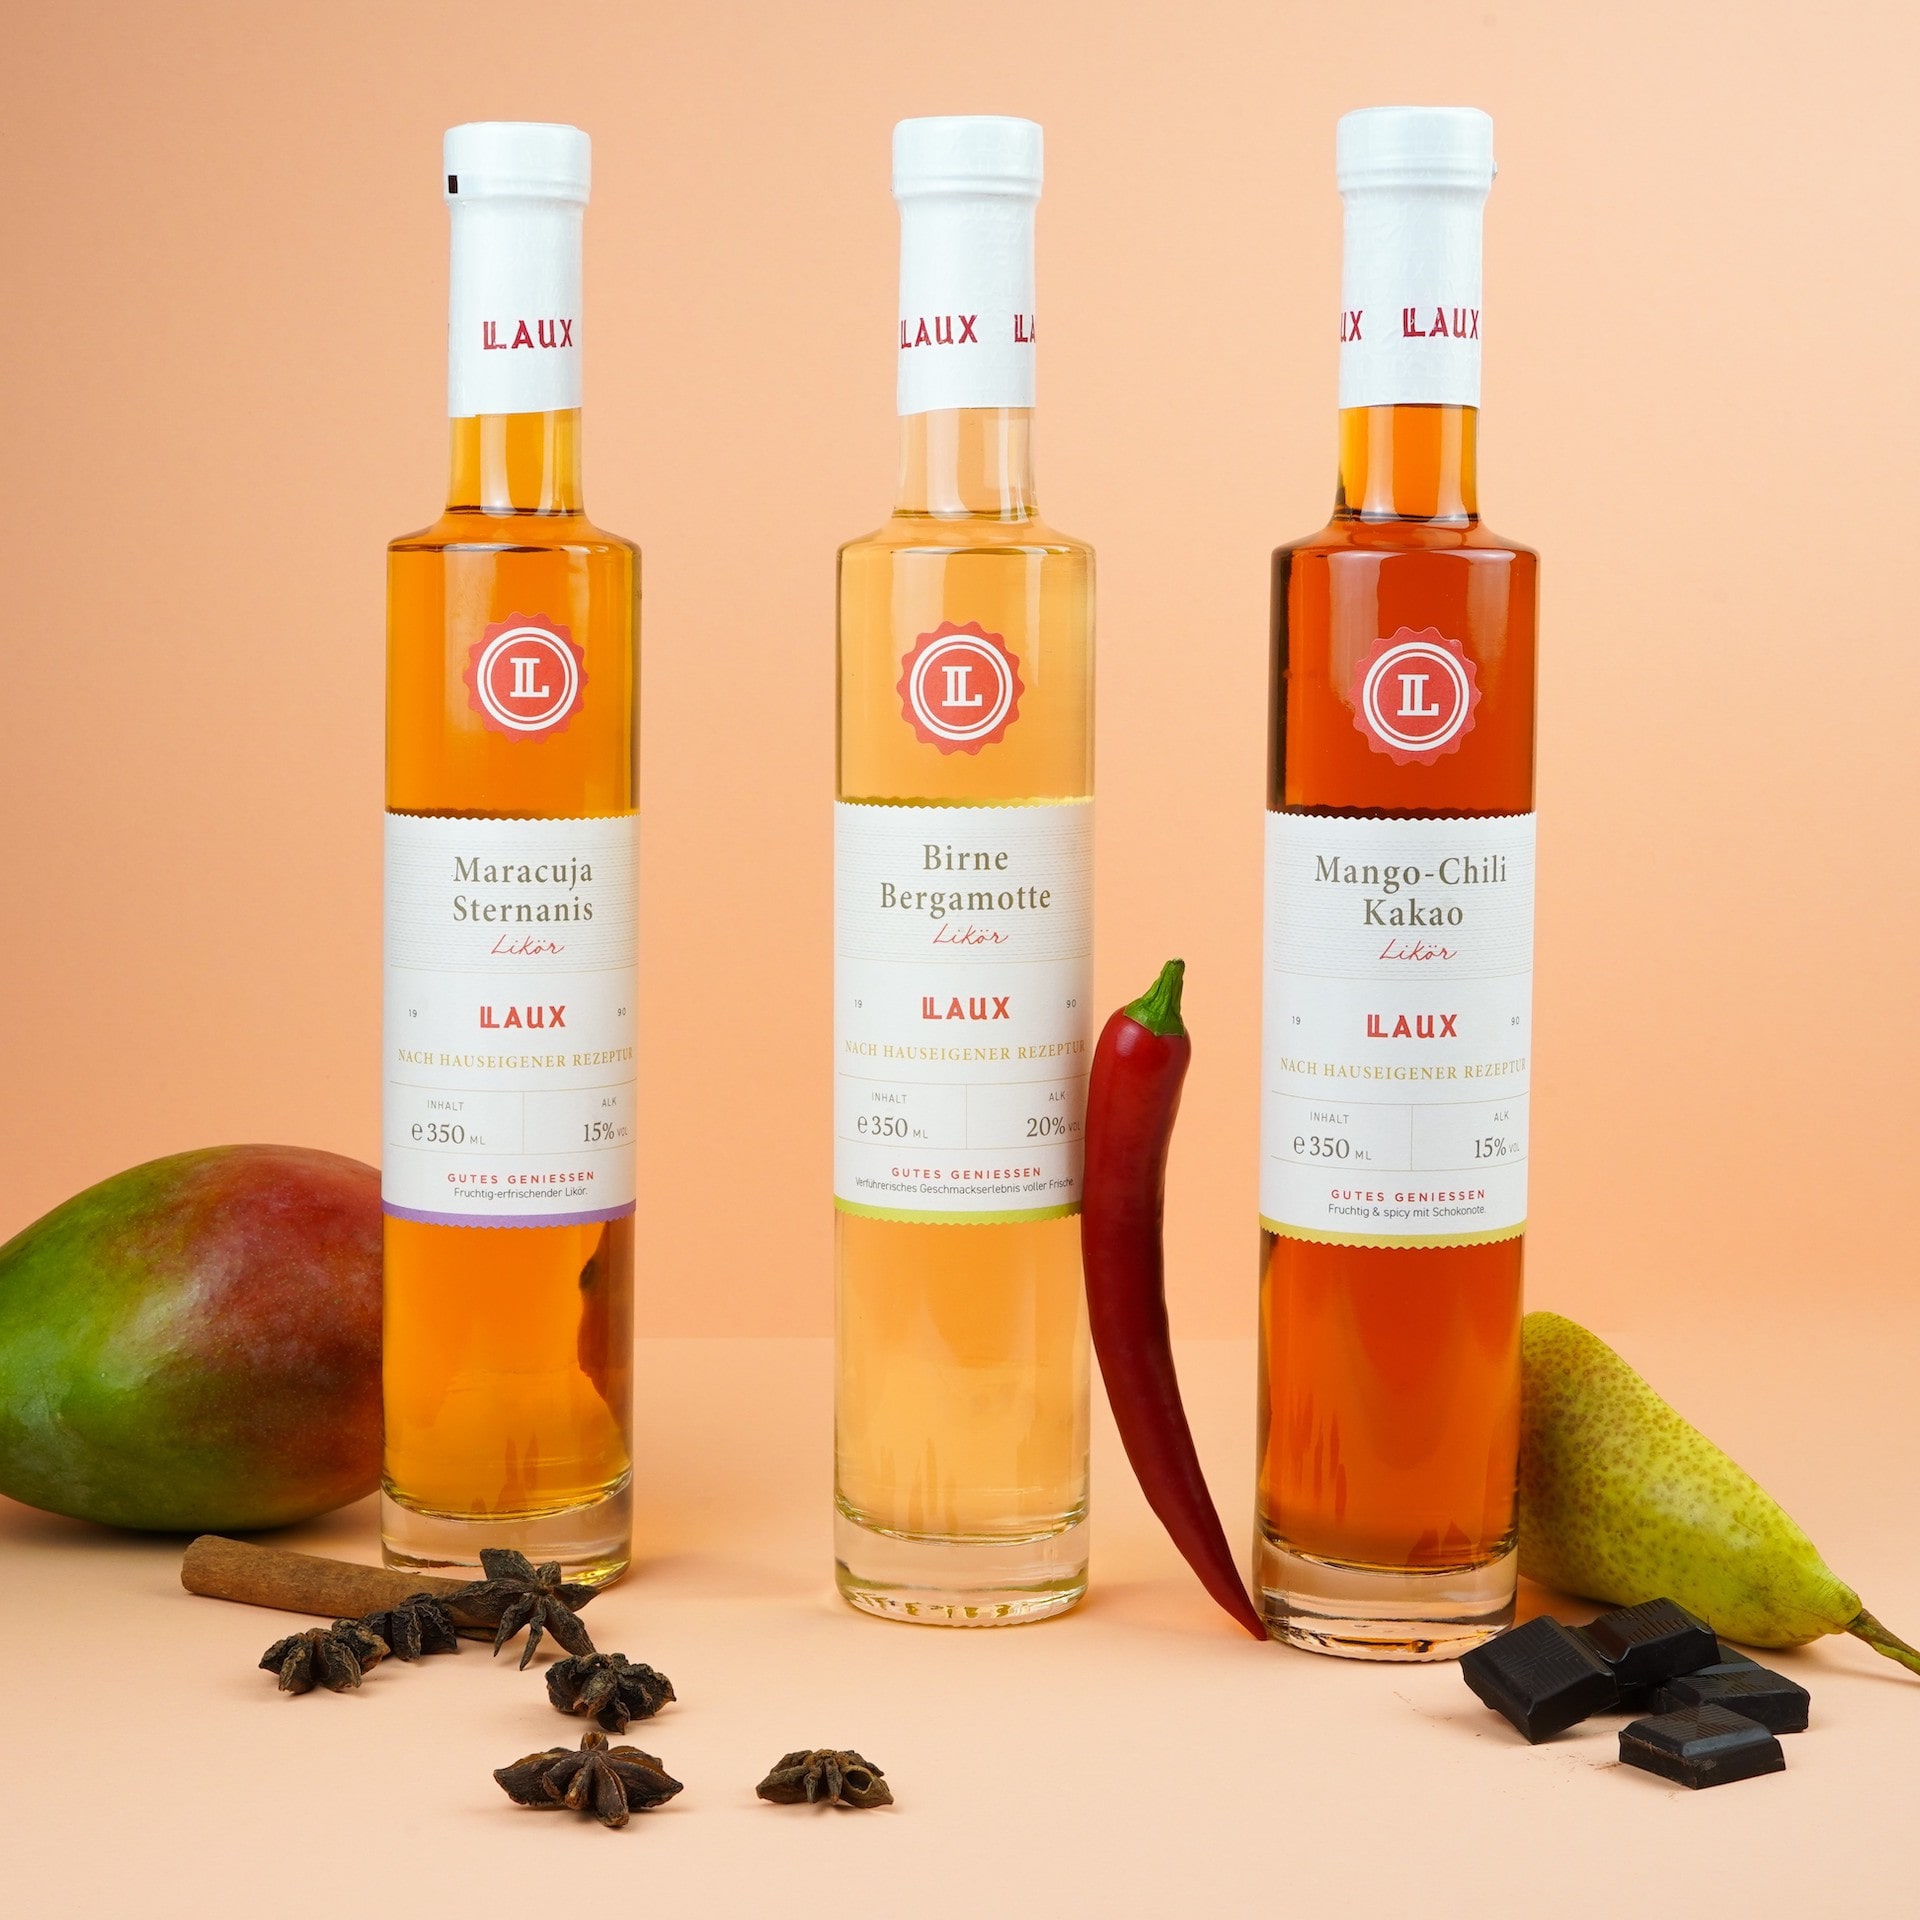 Maracuja-Sternanis Likör, Birne-Bergamotte Likör und Mango-Chili-Kakao Likör in Flaschen